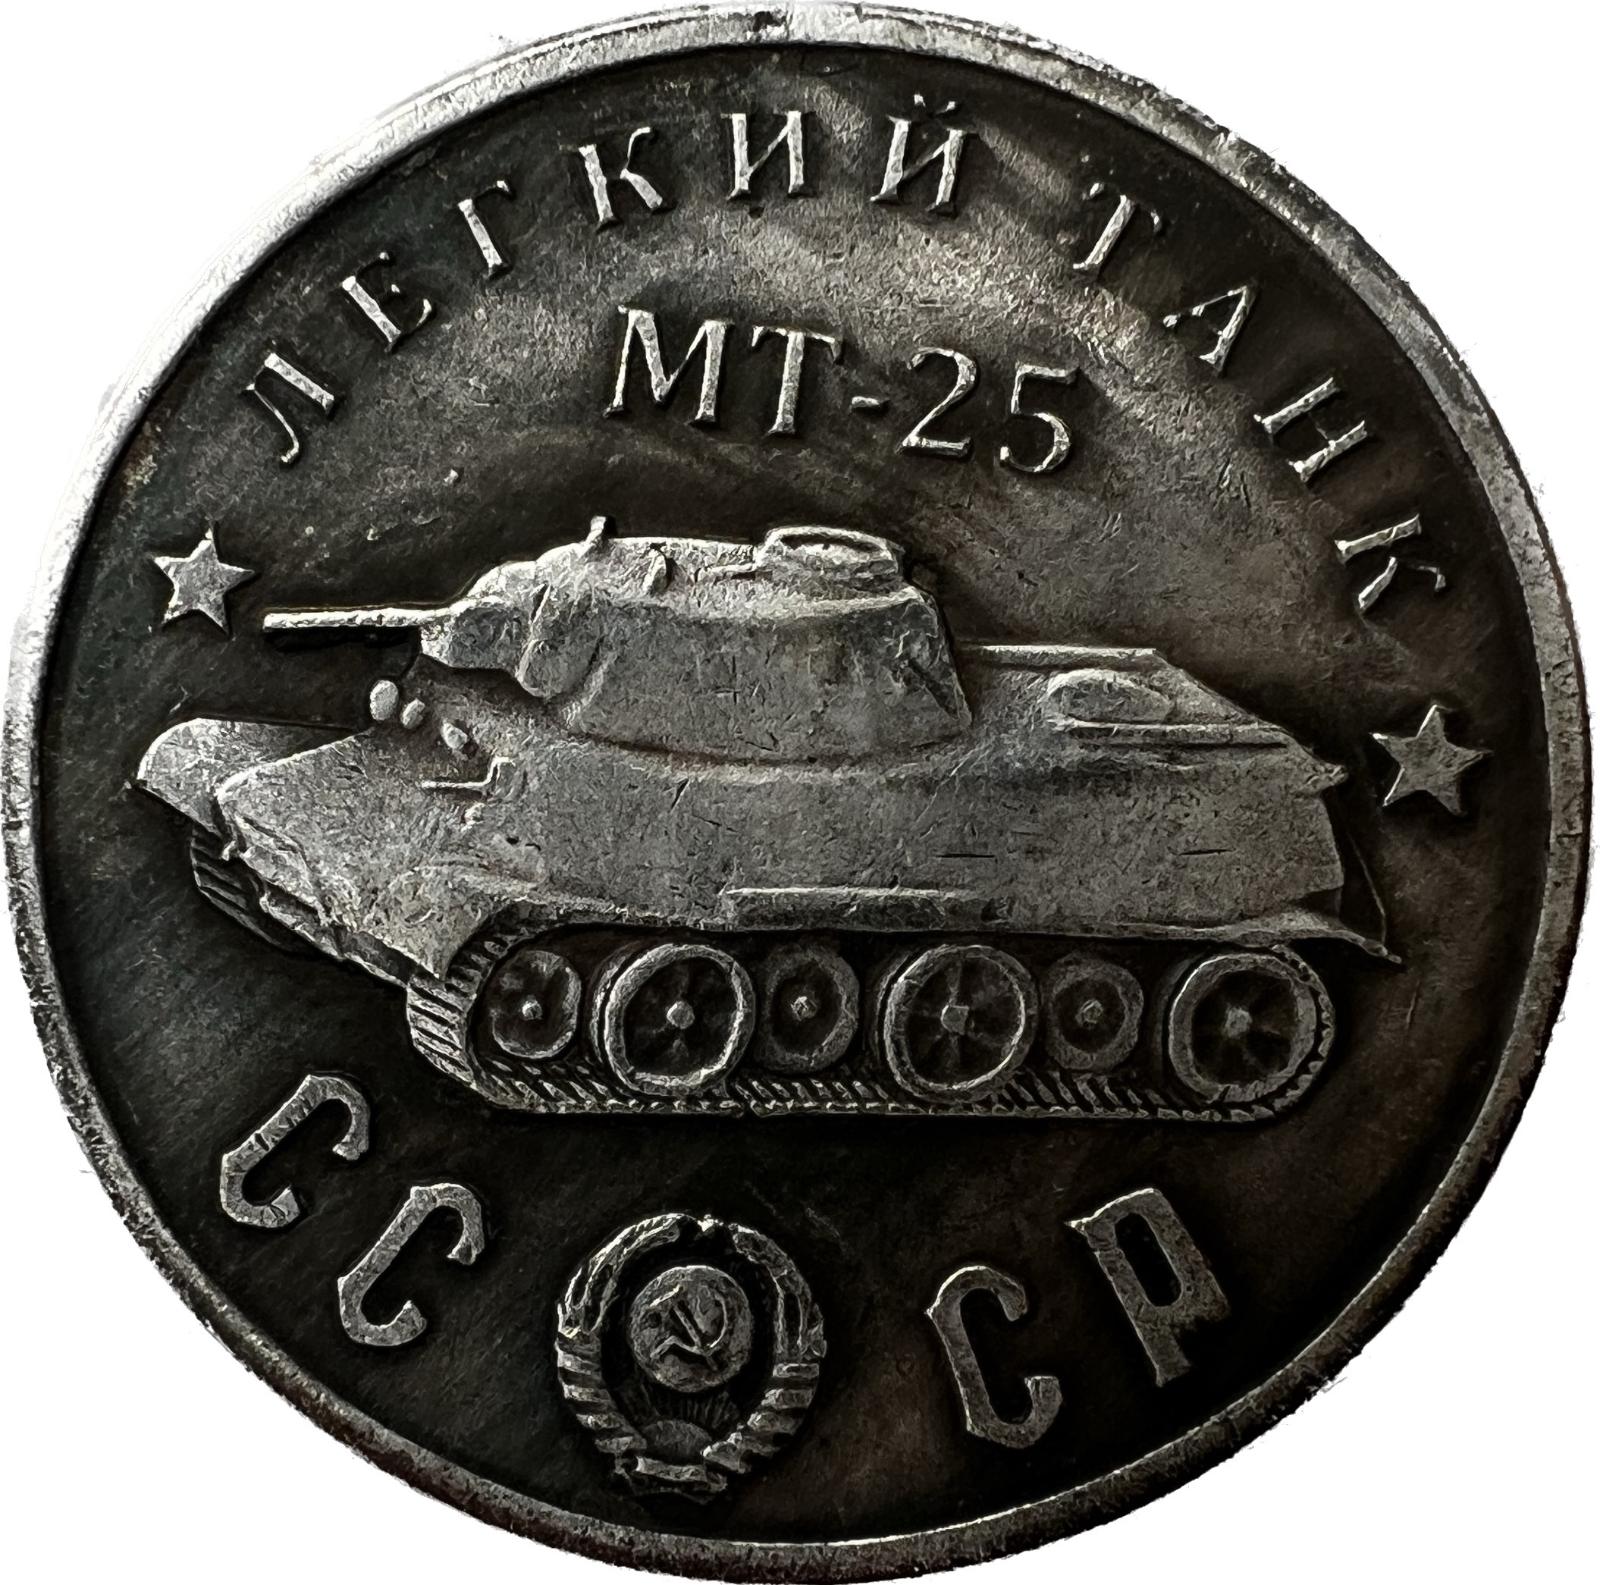 Sovietska mincová legenda: MT-25 v plnej paráde - Numizmatika